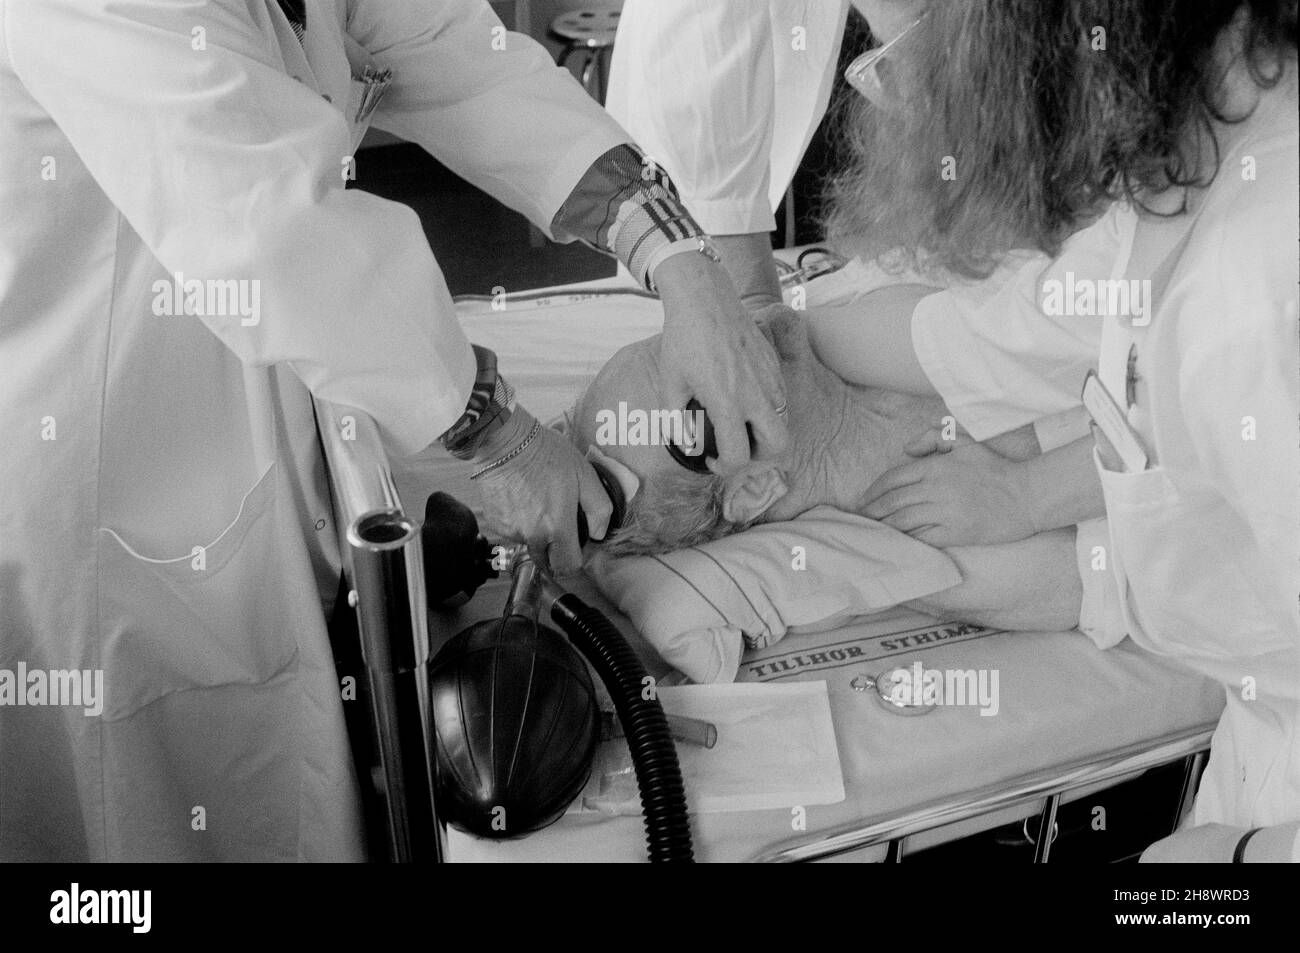 Il vecchio è stato sottoposto a terapia elettroconvulsiva presso l'ospedale psichiatrico Beckomberga sjukhus di Bromma, Stoccolma, Svezia. Foto scattata durante gli anni '80, con un'infermiera che tiene il paziente e un medico che applica i pedali ECT alla vecchia testa di mans. Foto Stock